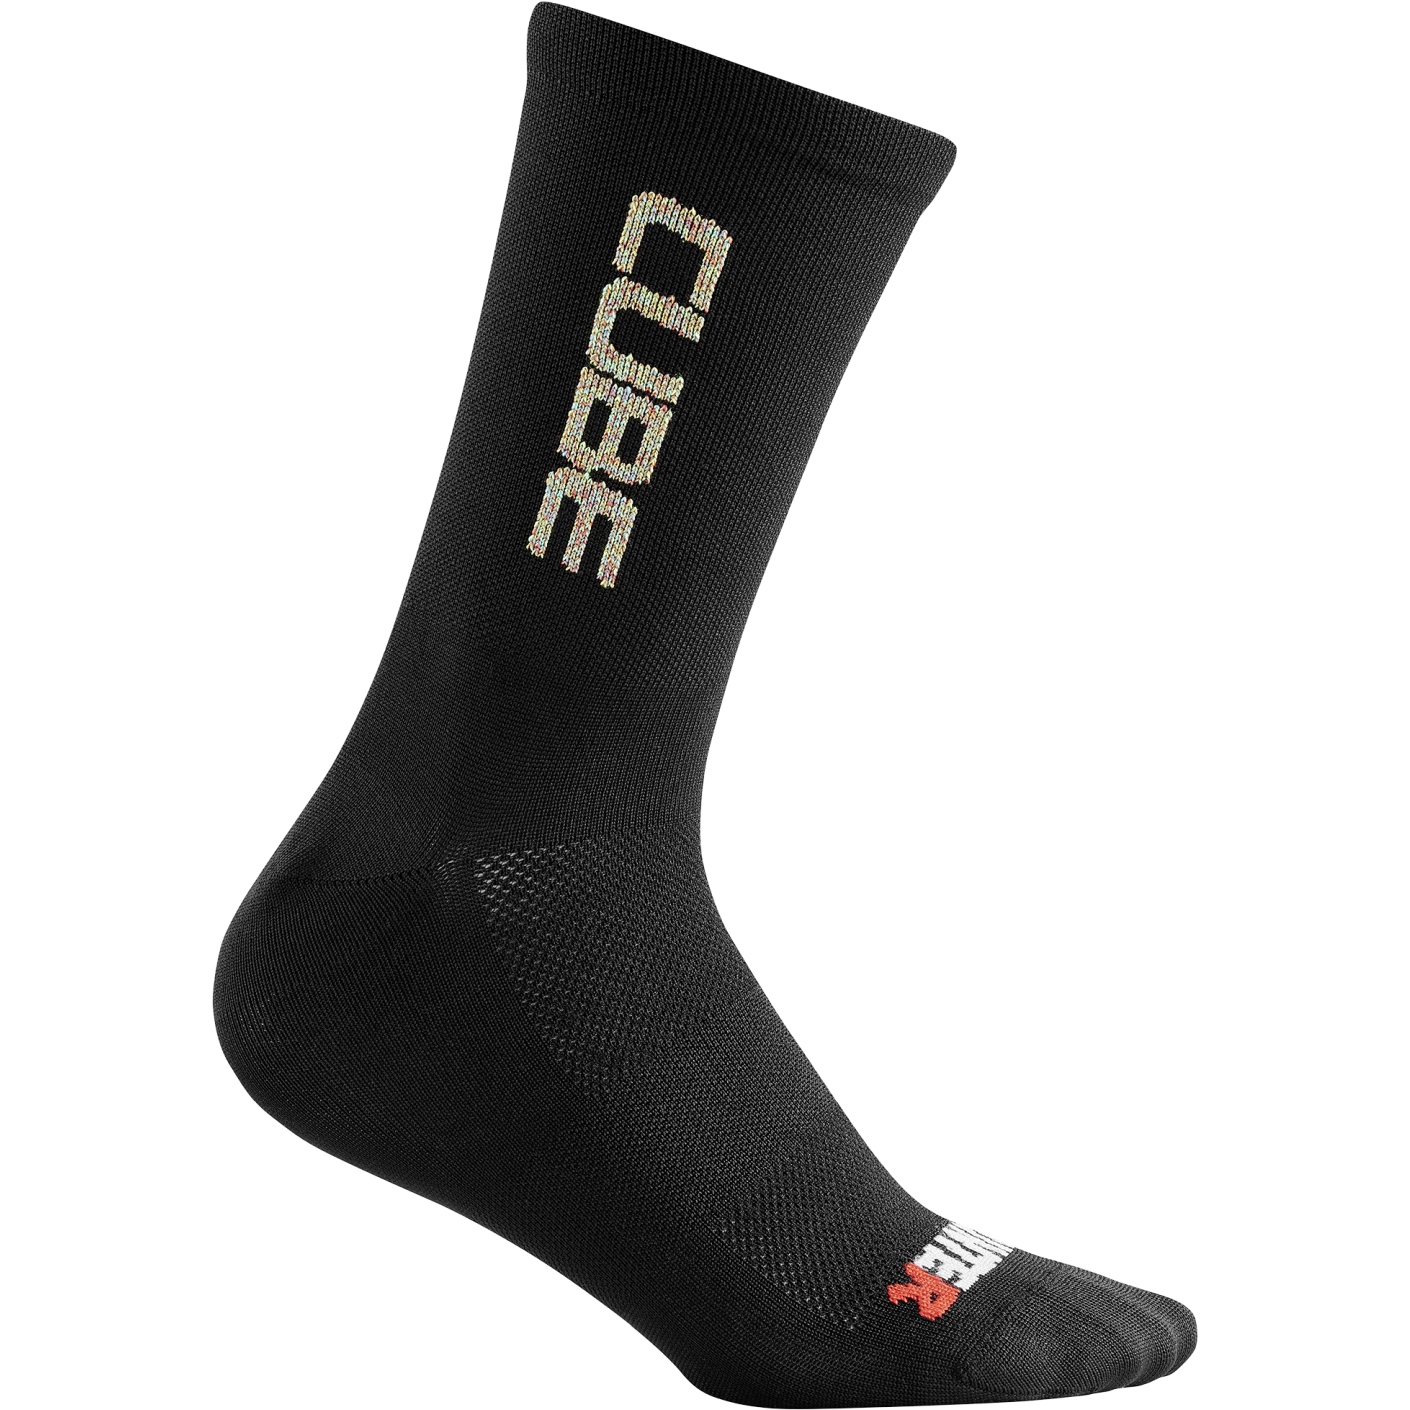 Produktbild von CUBE VERTEX High Cut Socken - schwarz